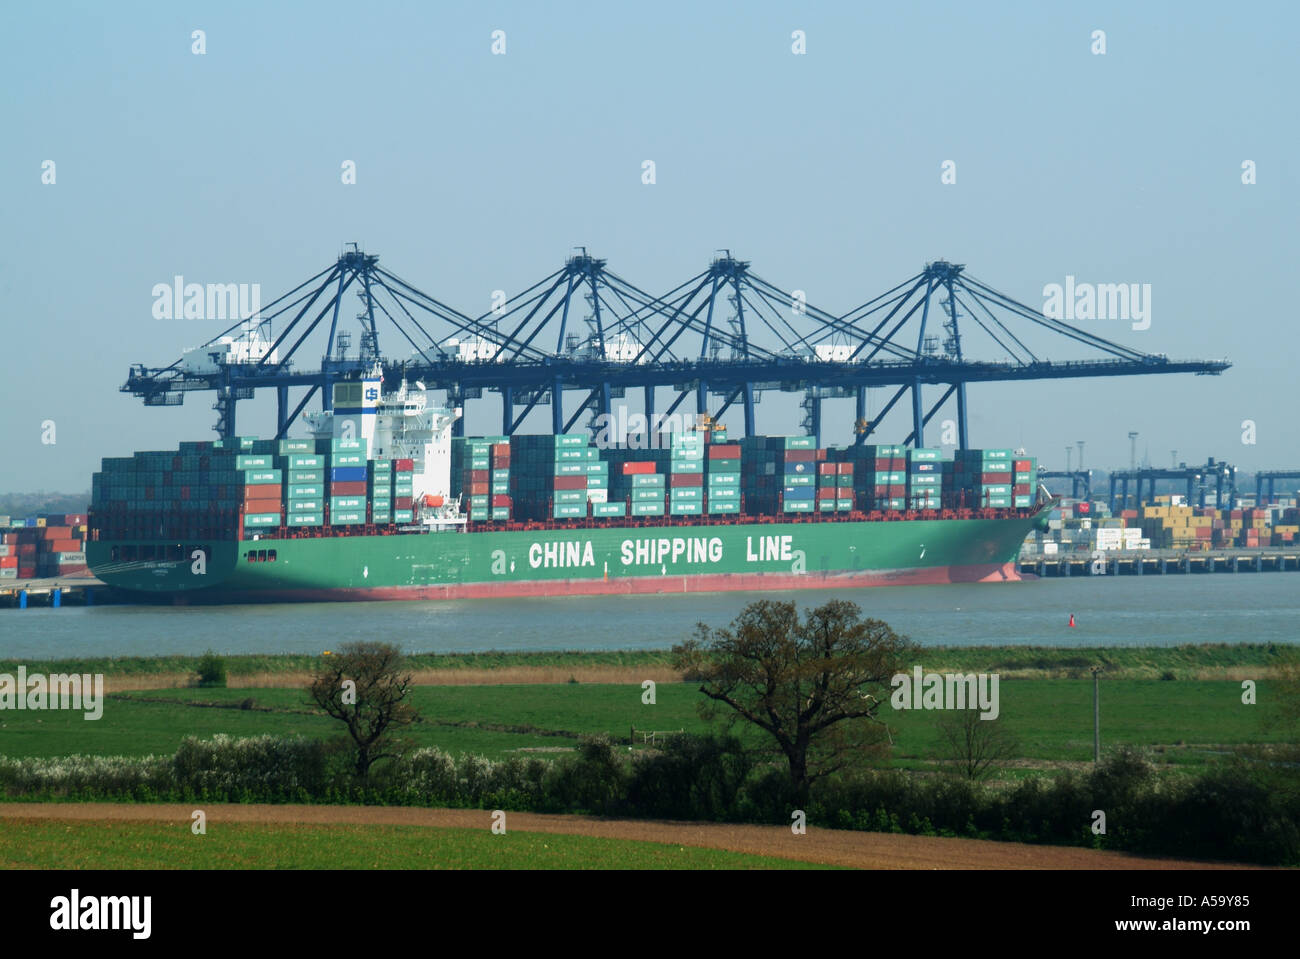 La logistica di trasporto al porto di Felixstowe Suffolk REGNO UNITO Inghilterra nave container caricato con la Cina i contenitori di spedizione mantenendo la catena di fornitura a galla Foto Stock